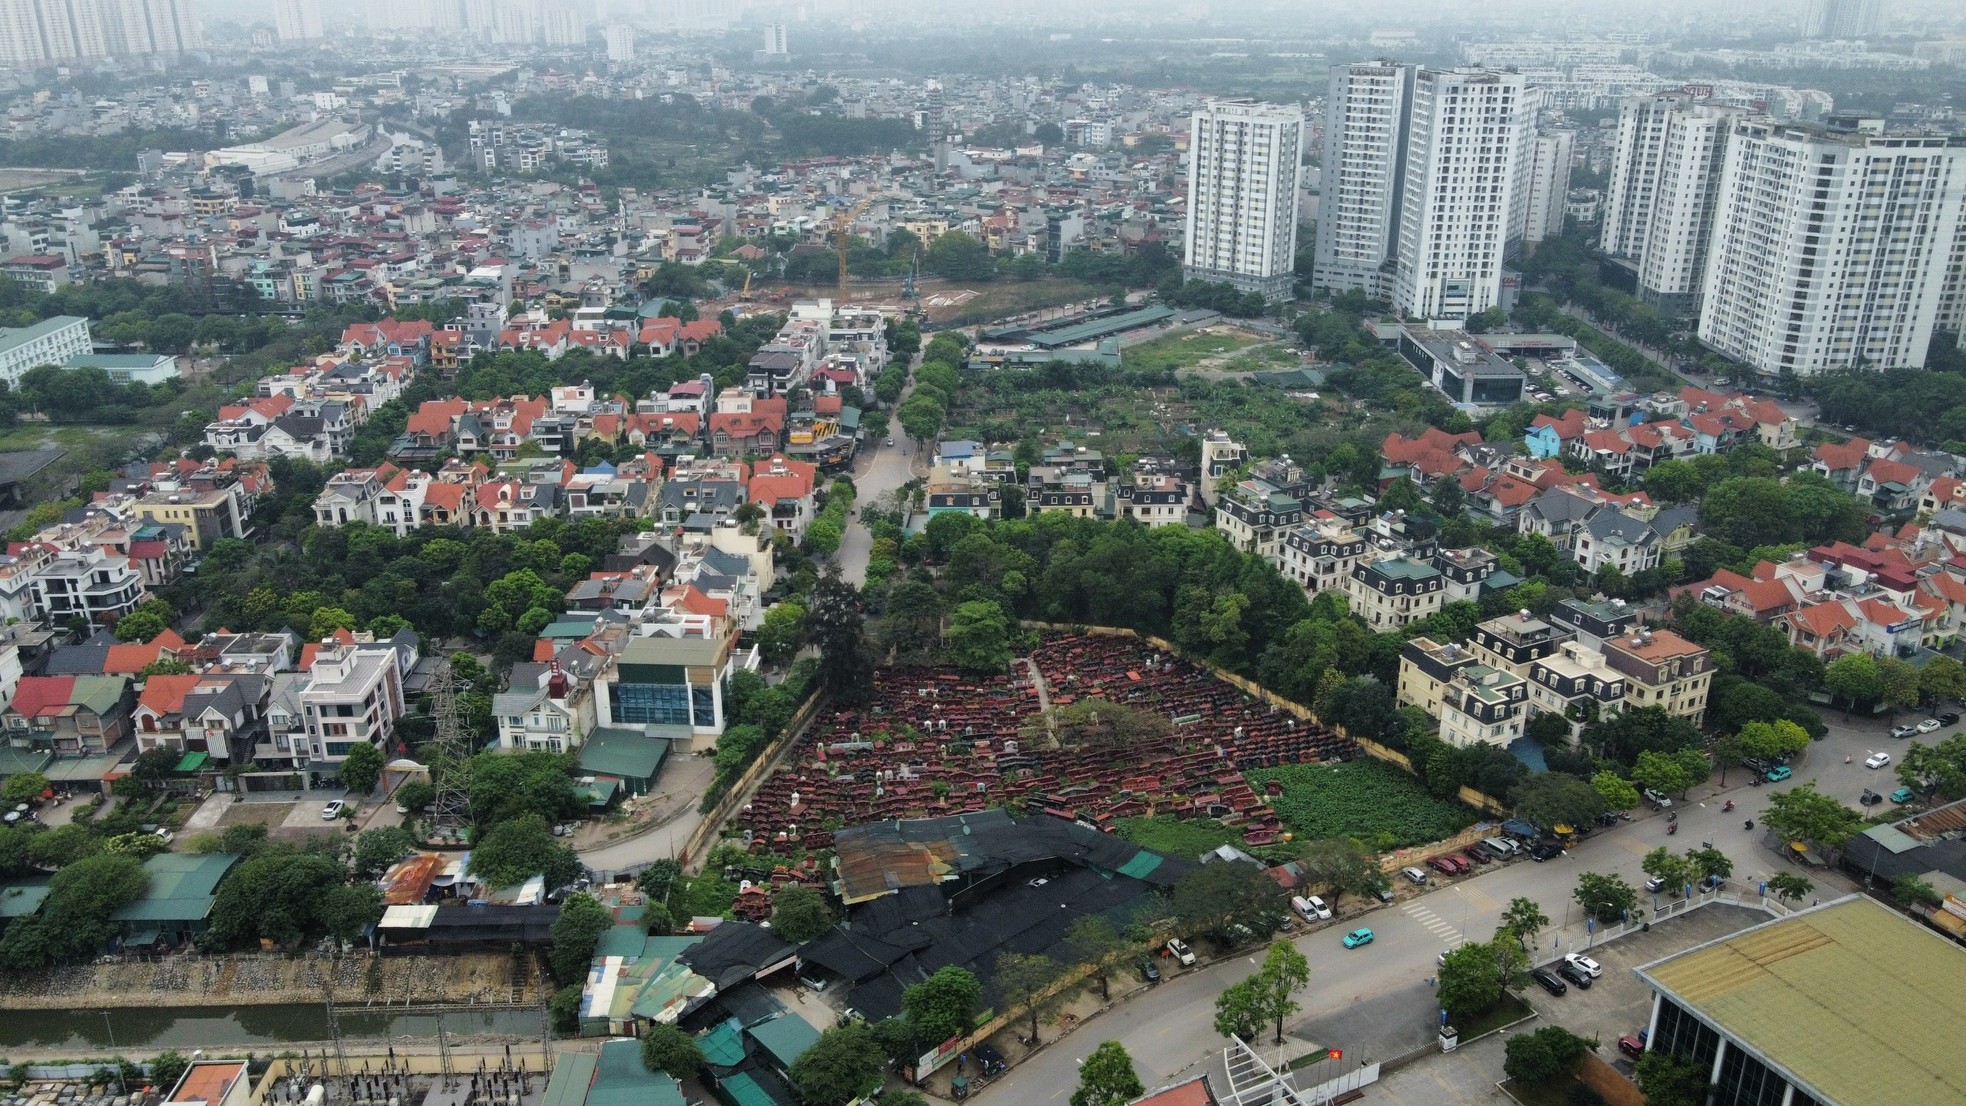 Khu đất 'mọc' bãi xe lậu nơi phường đông dân nhất Hà Nội chuẩn bị xây trường học - Ảnh 5.